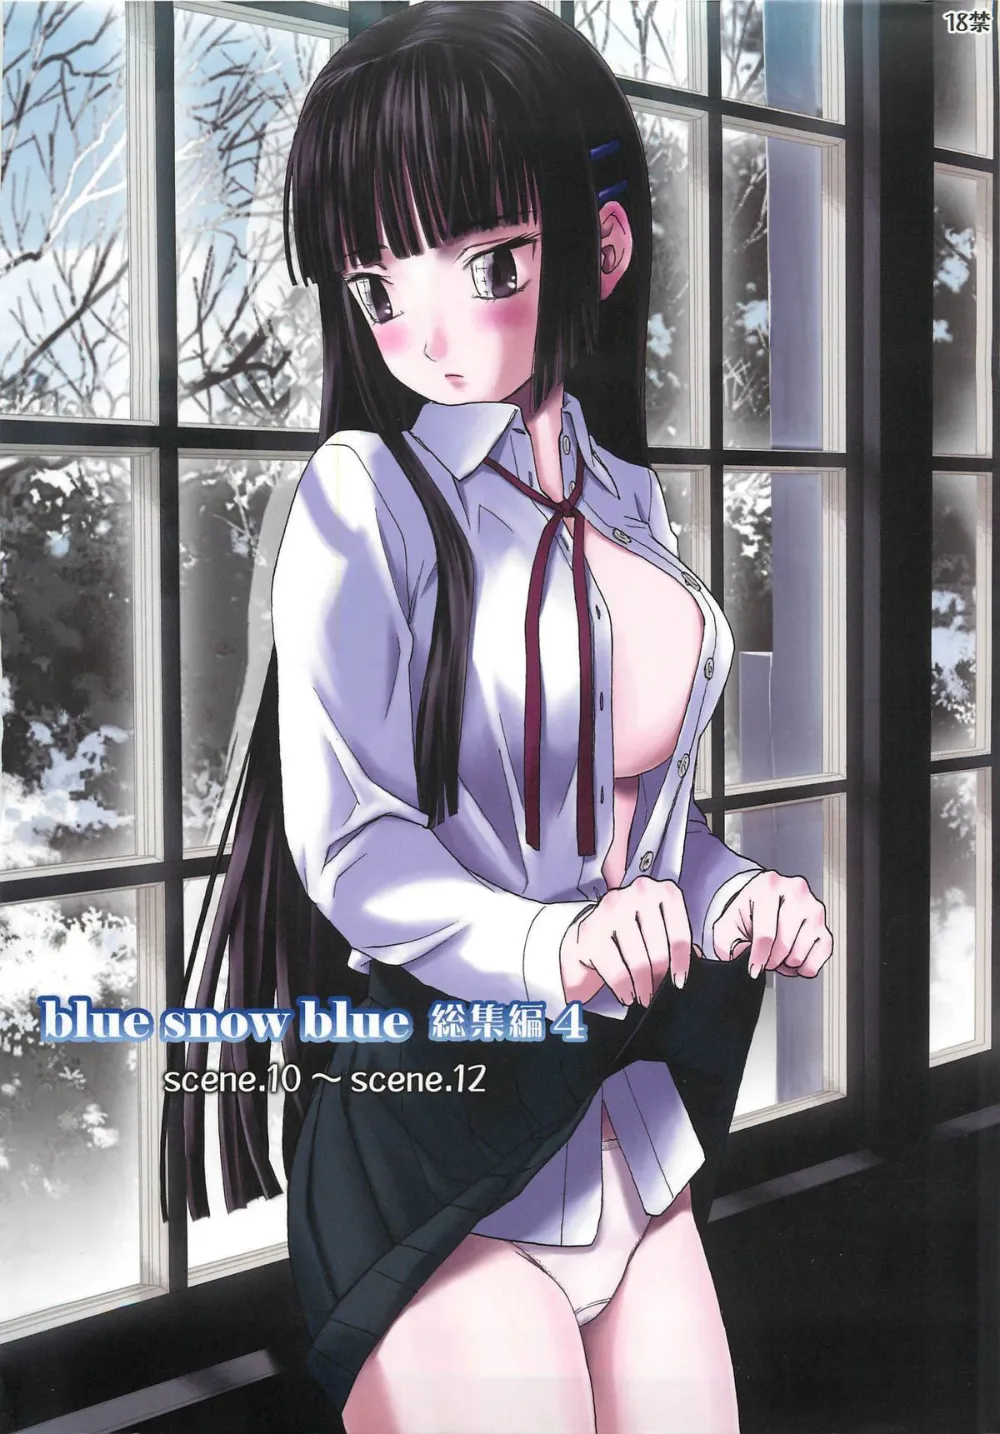 Blue snow blue [天王寺狐]